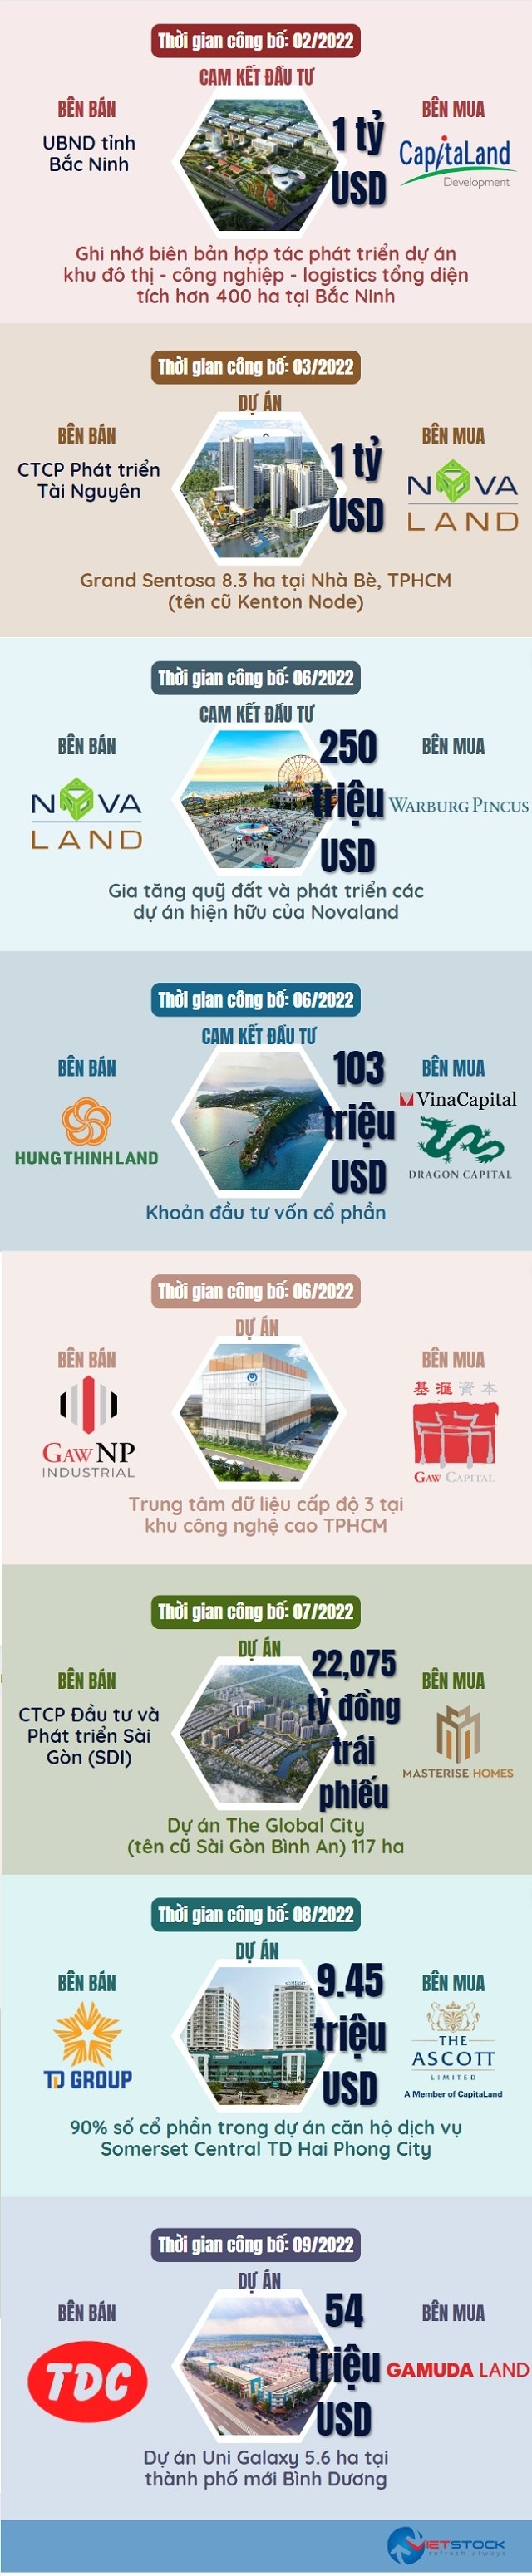 Những thương vụ M&A bất động sản Việt Nam năm 2022